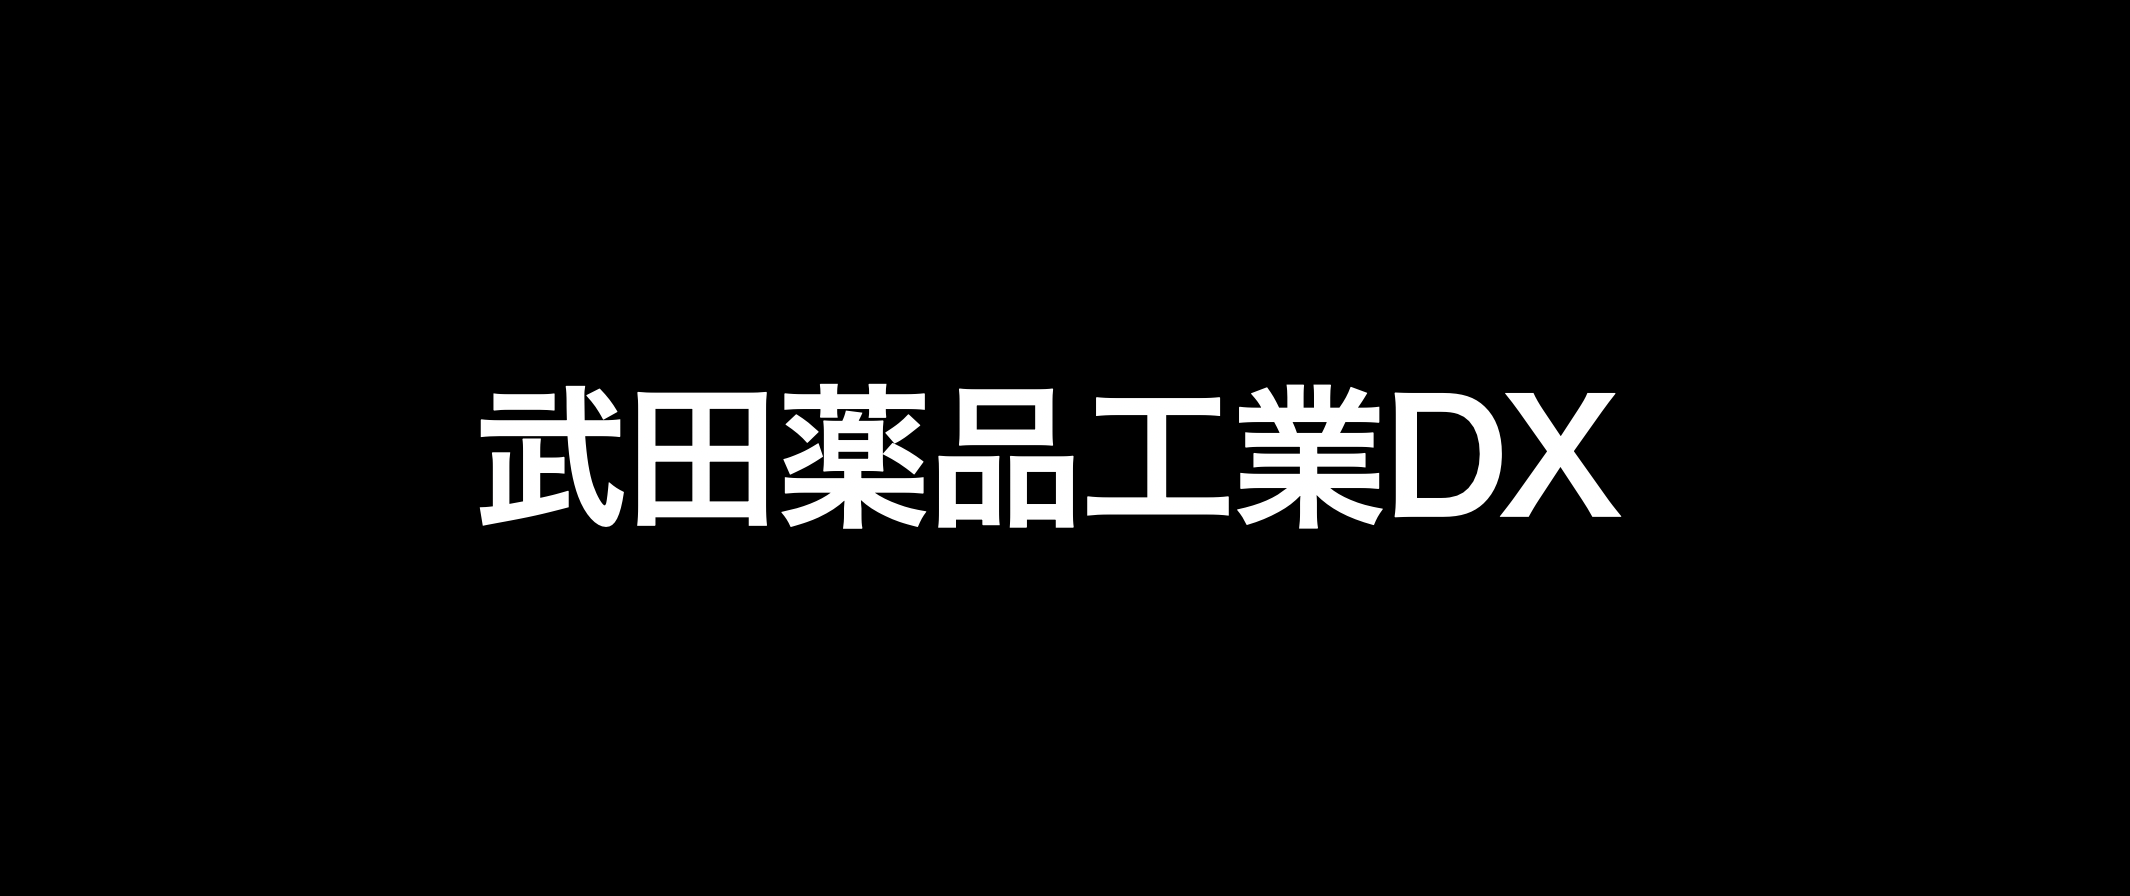 武田薬品工業のDX戦略を解説